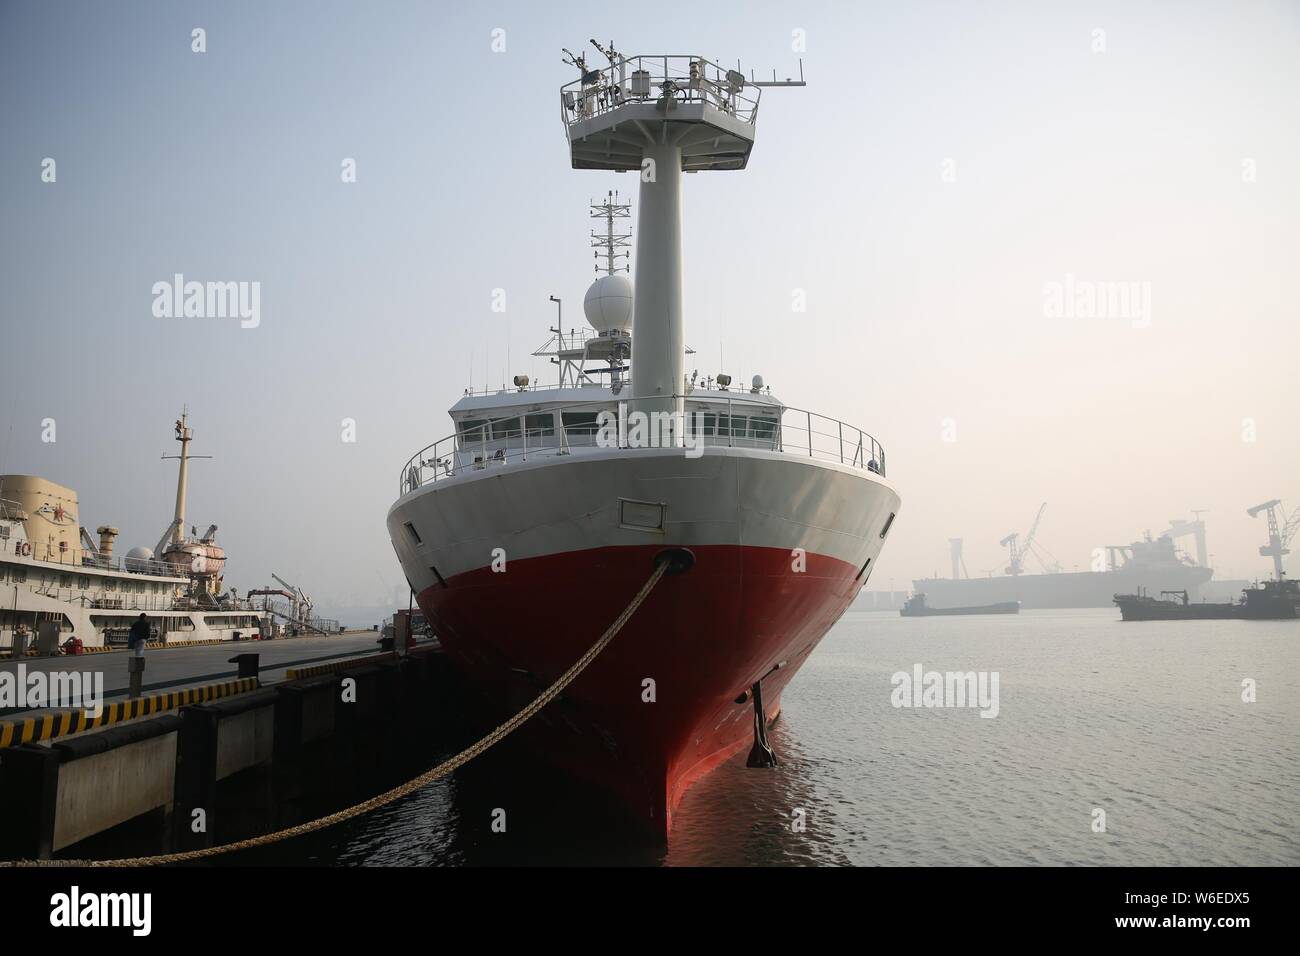 China's Forschungsschiff der Kexue, oder "Wissenschaft", wird dargestellt, vor dem Auslaufen aus einem Hafen für eine Expedition zu den Magellan Seamounts im Westen Paci Stockfoto